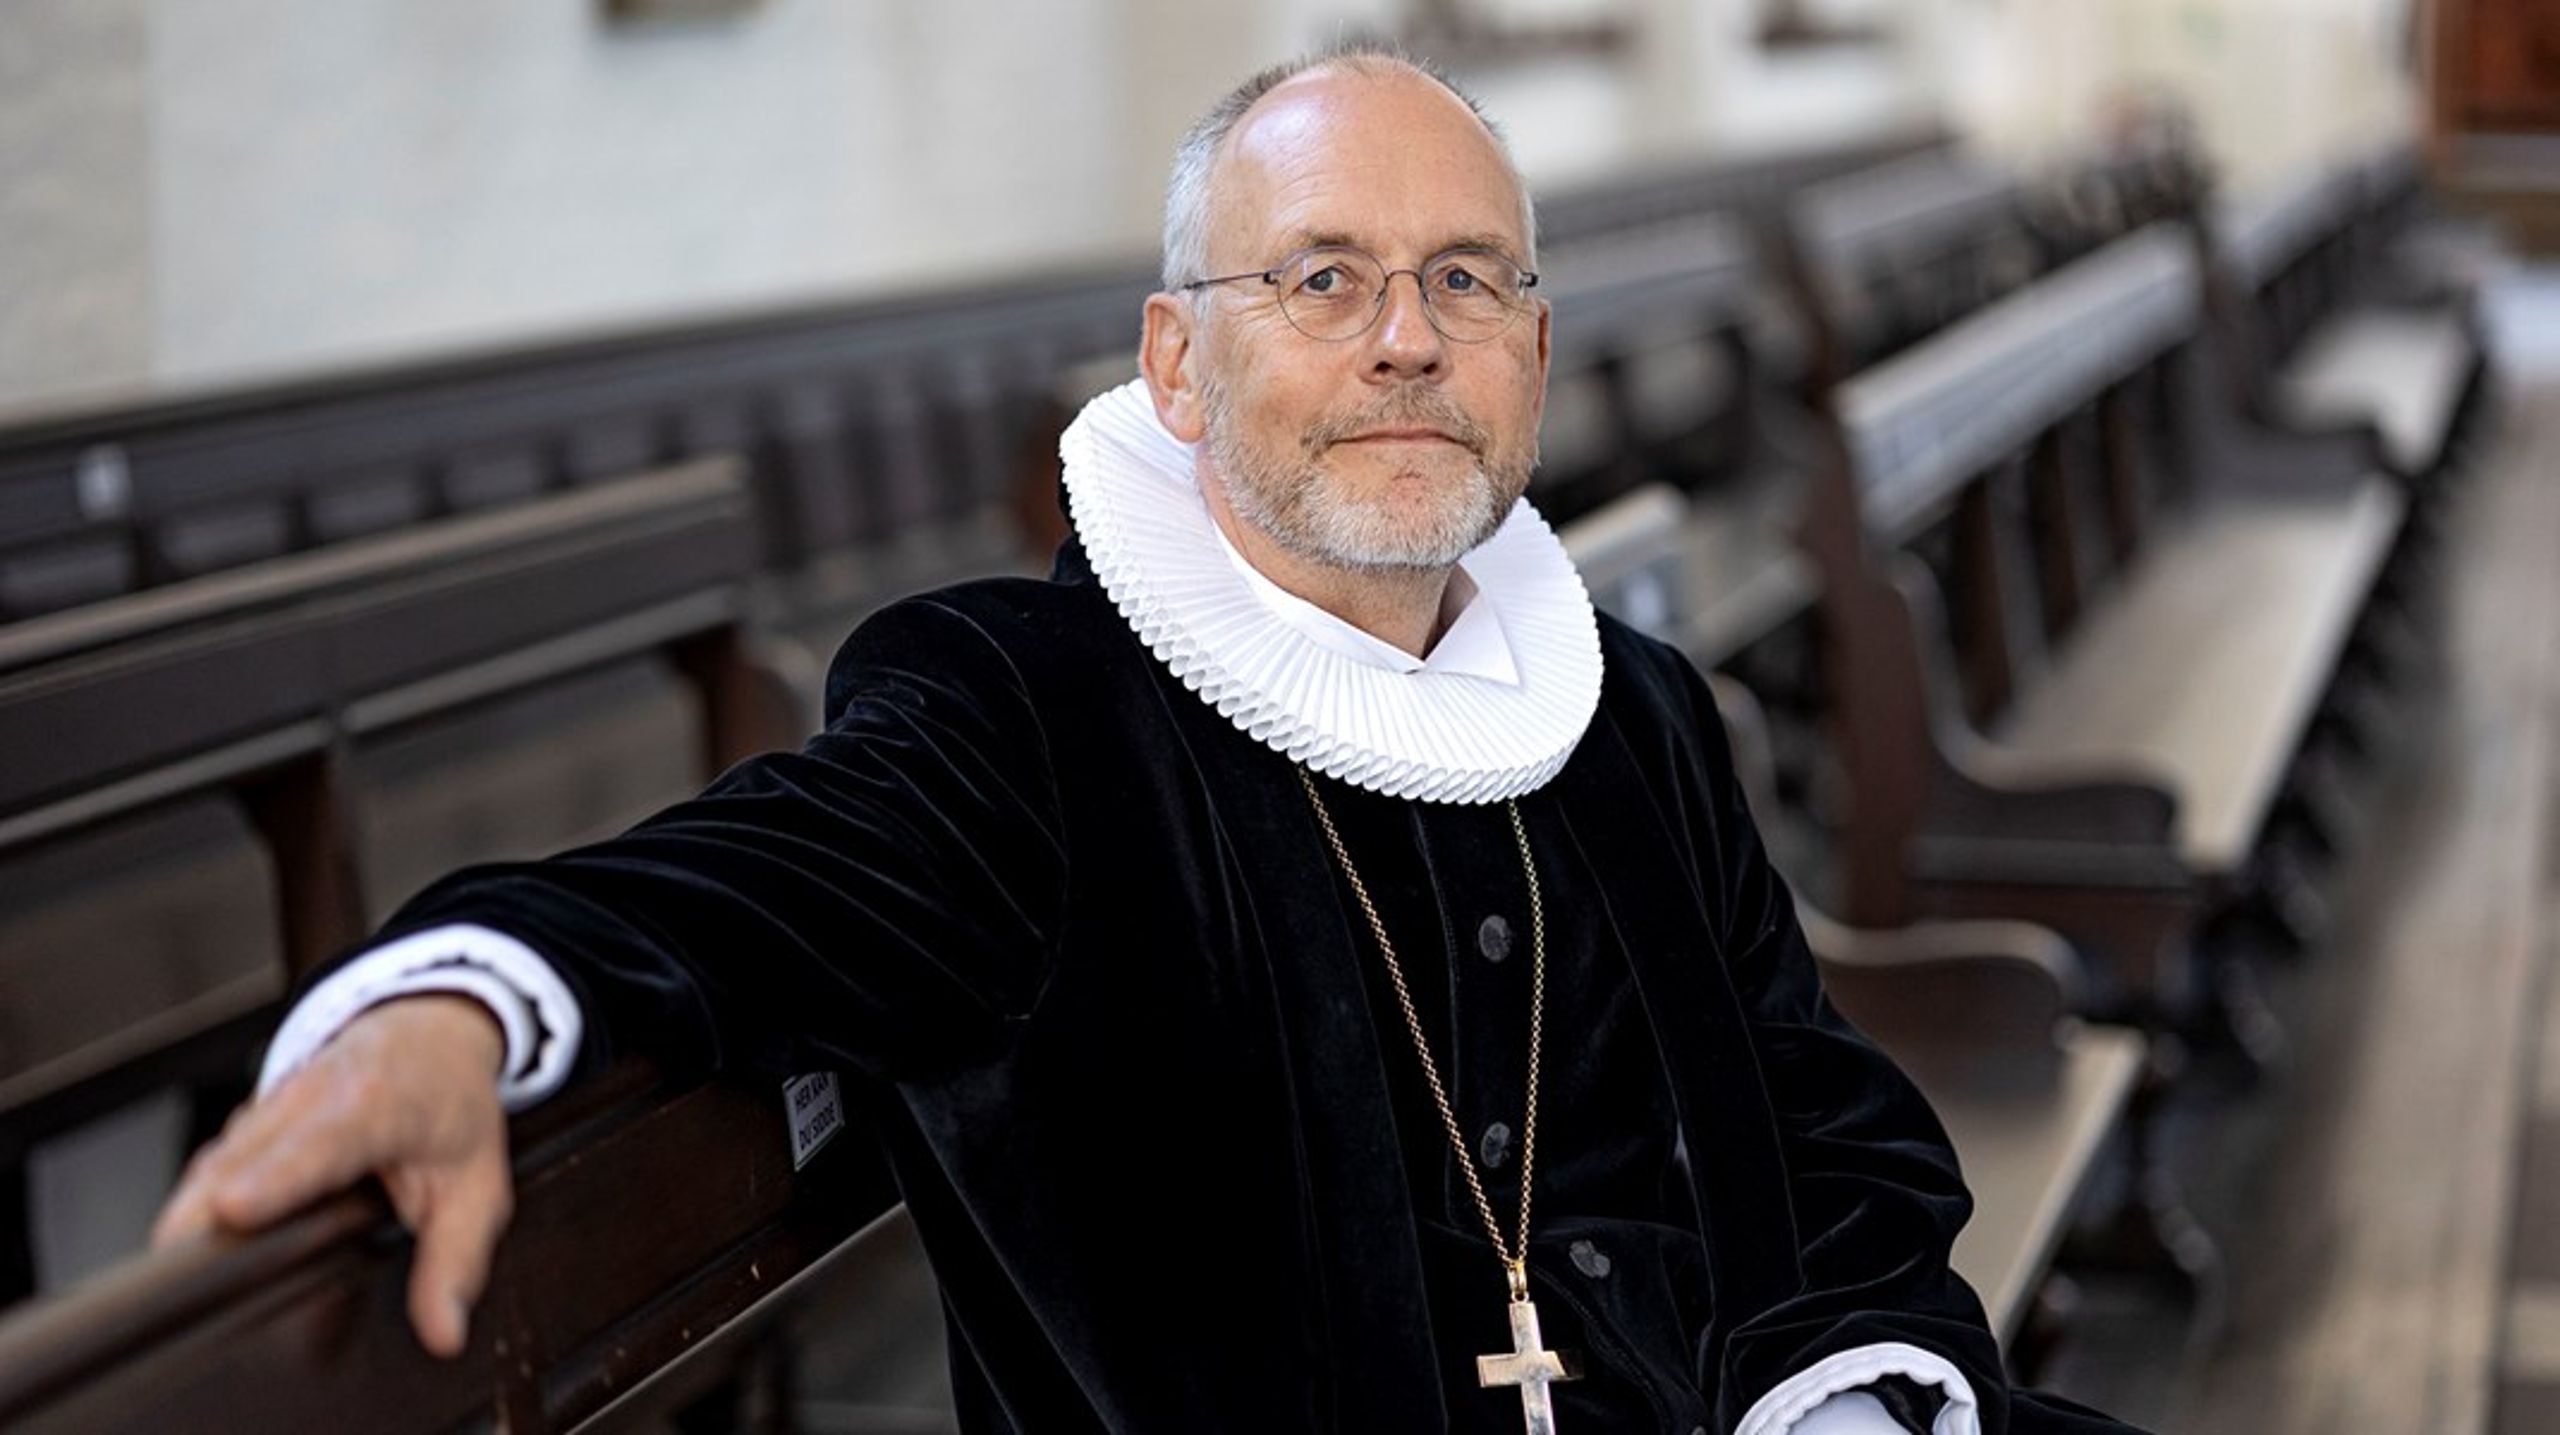 Henrik Wigh-Poulsen begyndte sin kirkelige&nbsp;karriere&nbsp;som sognepræst i Lejrskov-Jordrup pastorat i 1989.